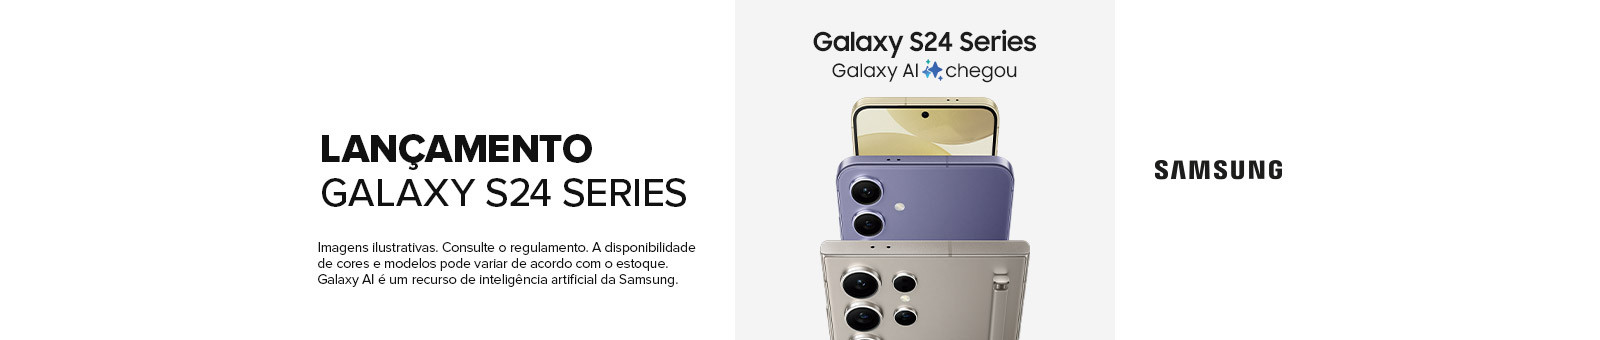 Promoção de lançamento Galaxy S24 Series